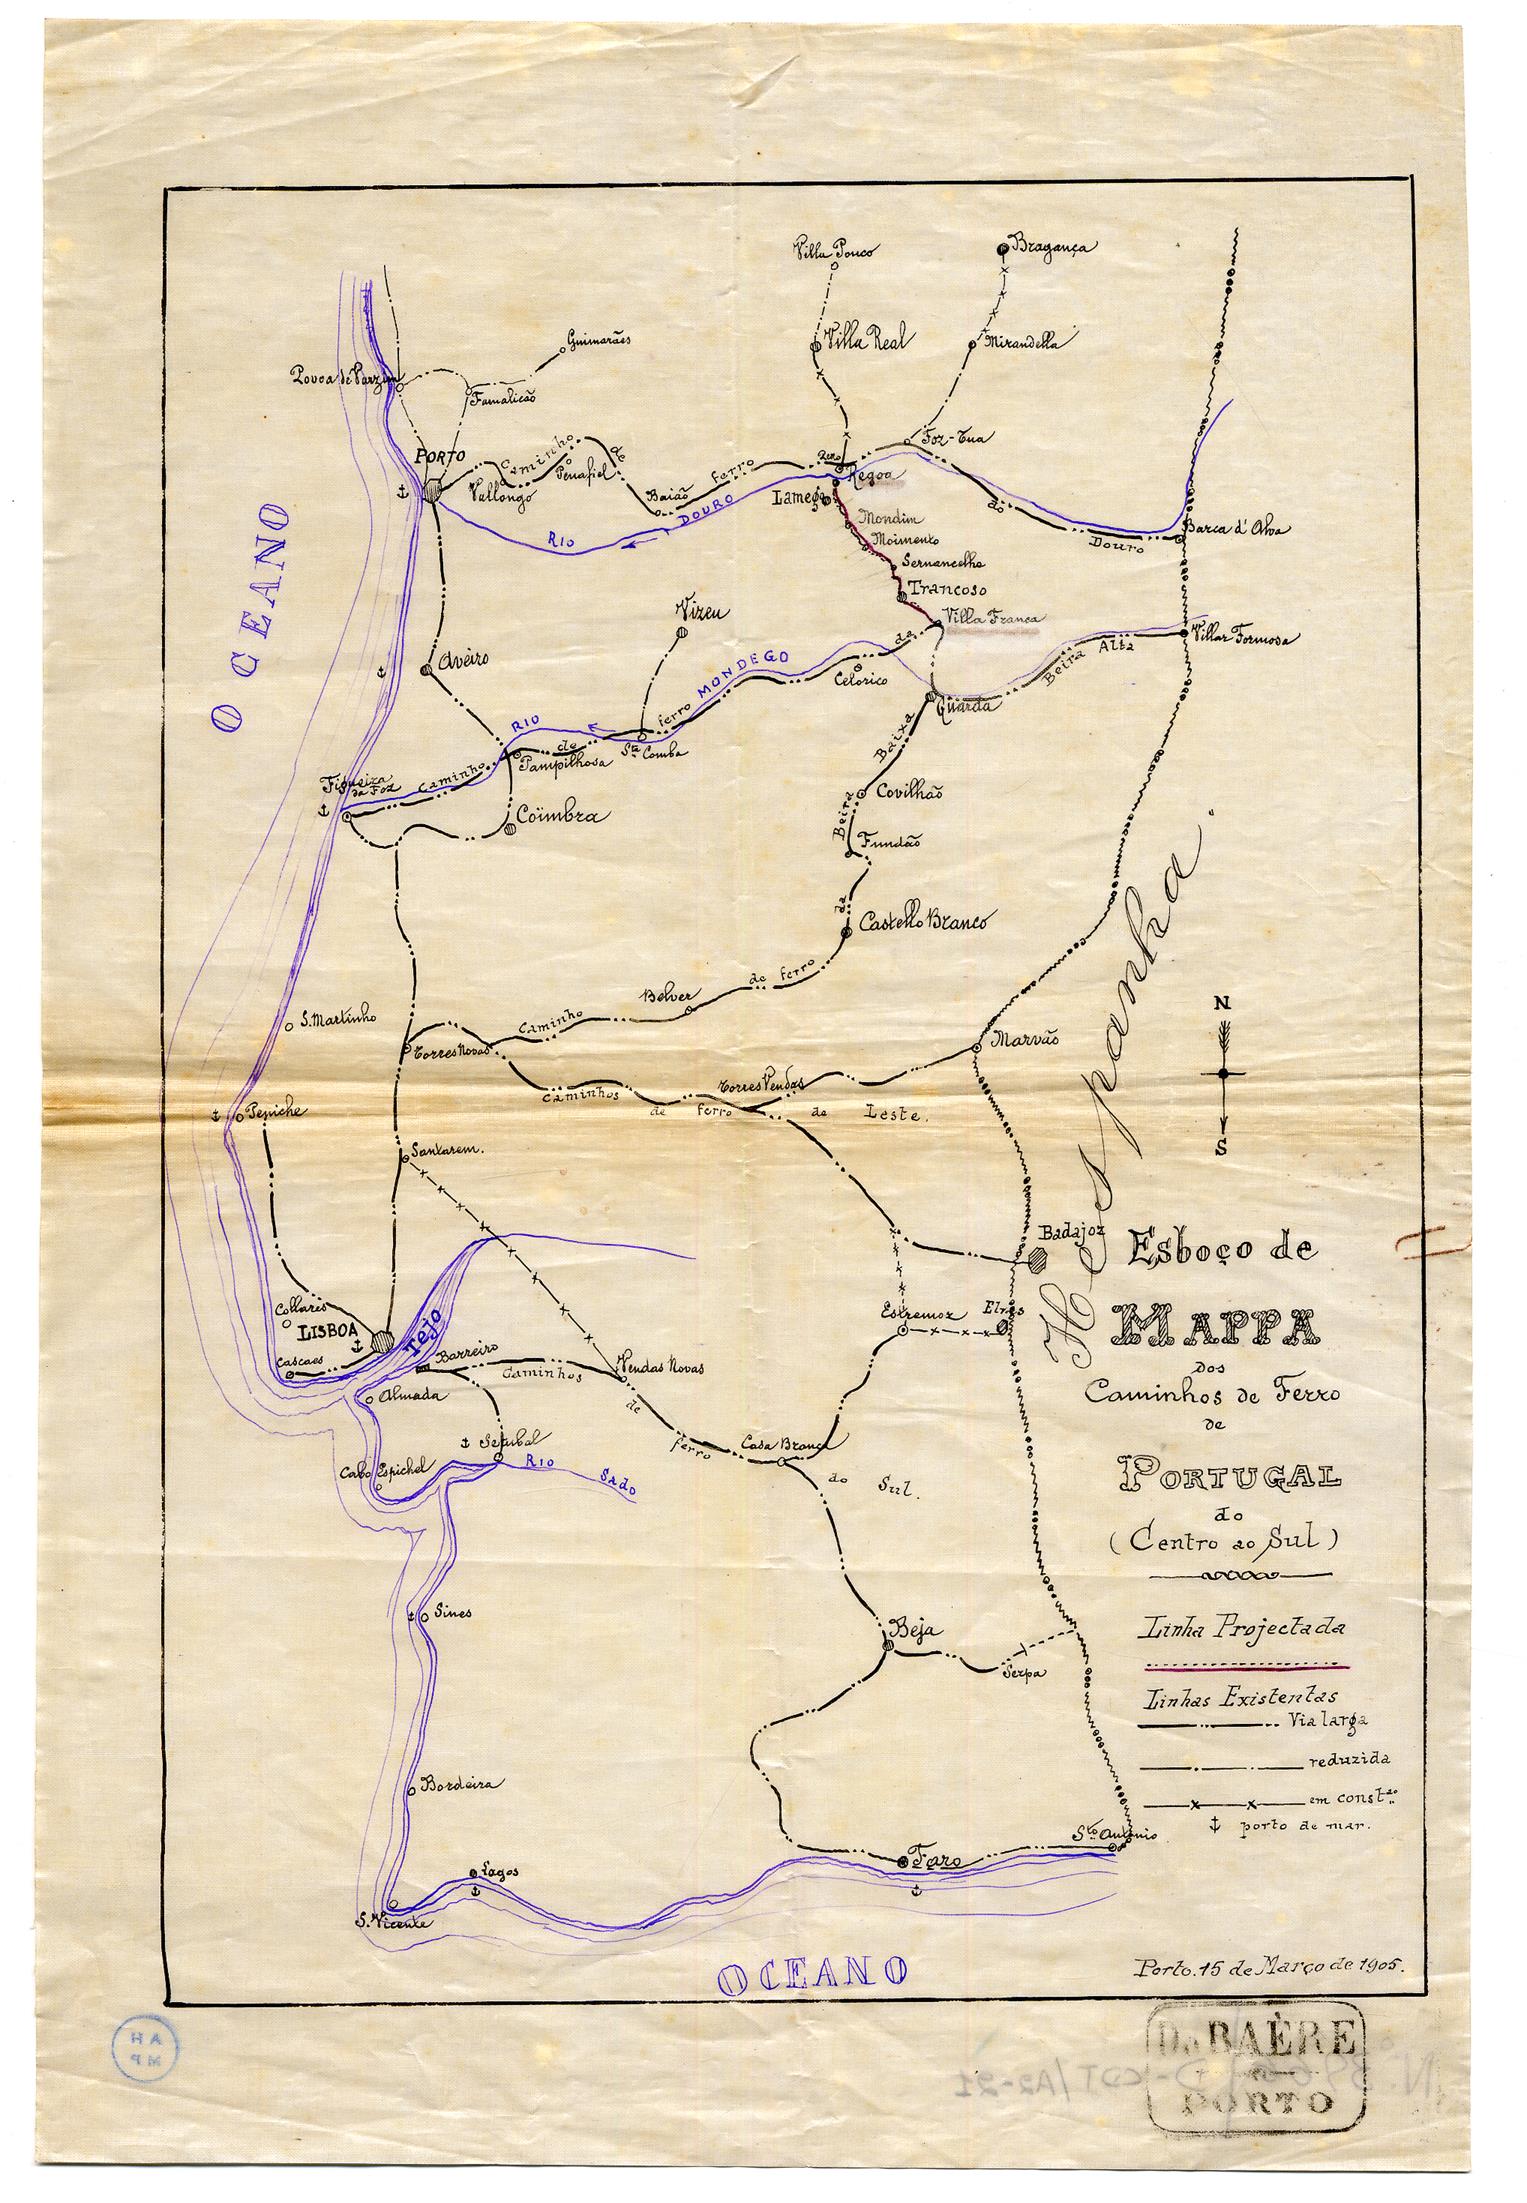 Esboço de mapa dos caminhos de ferro de Portugal